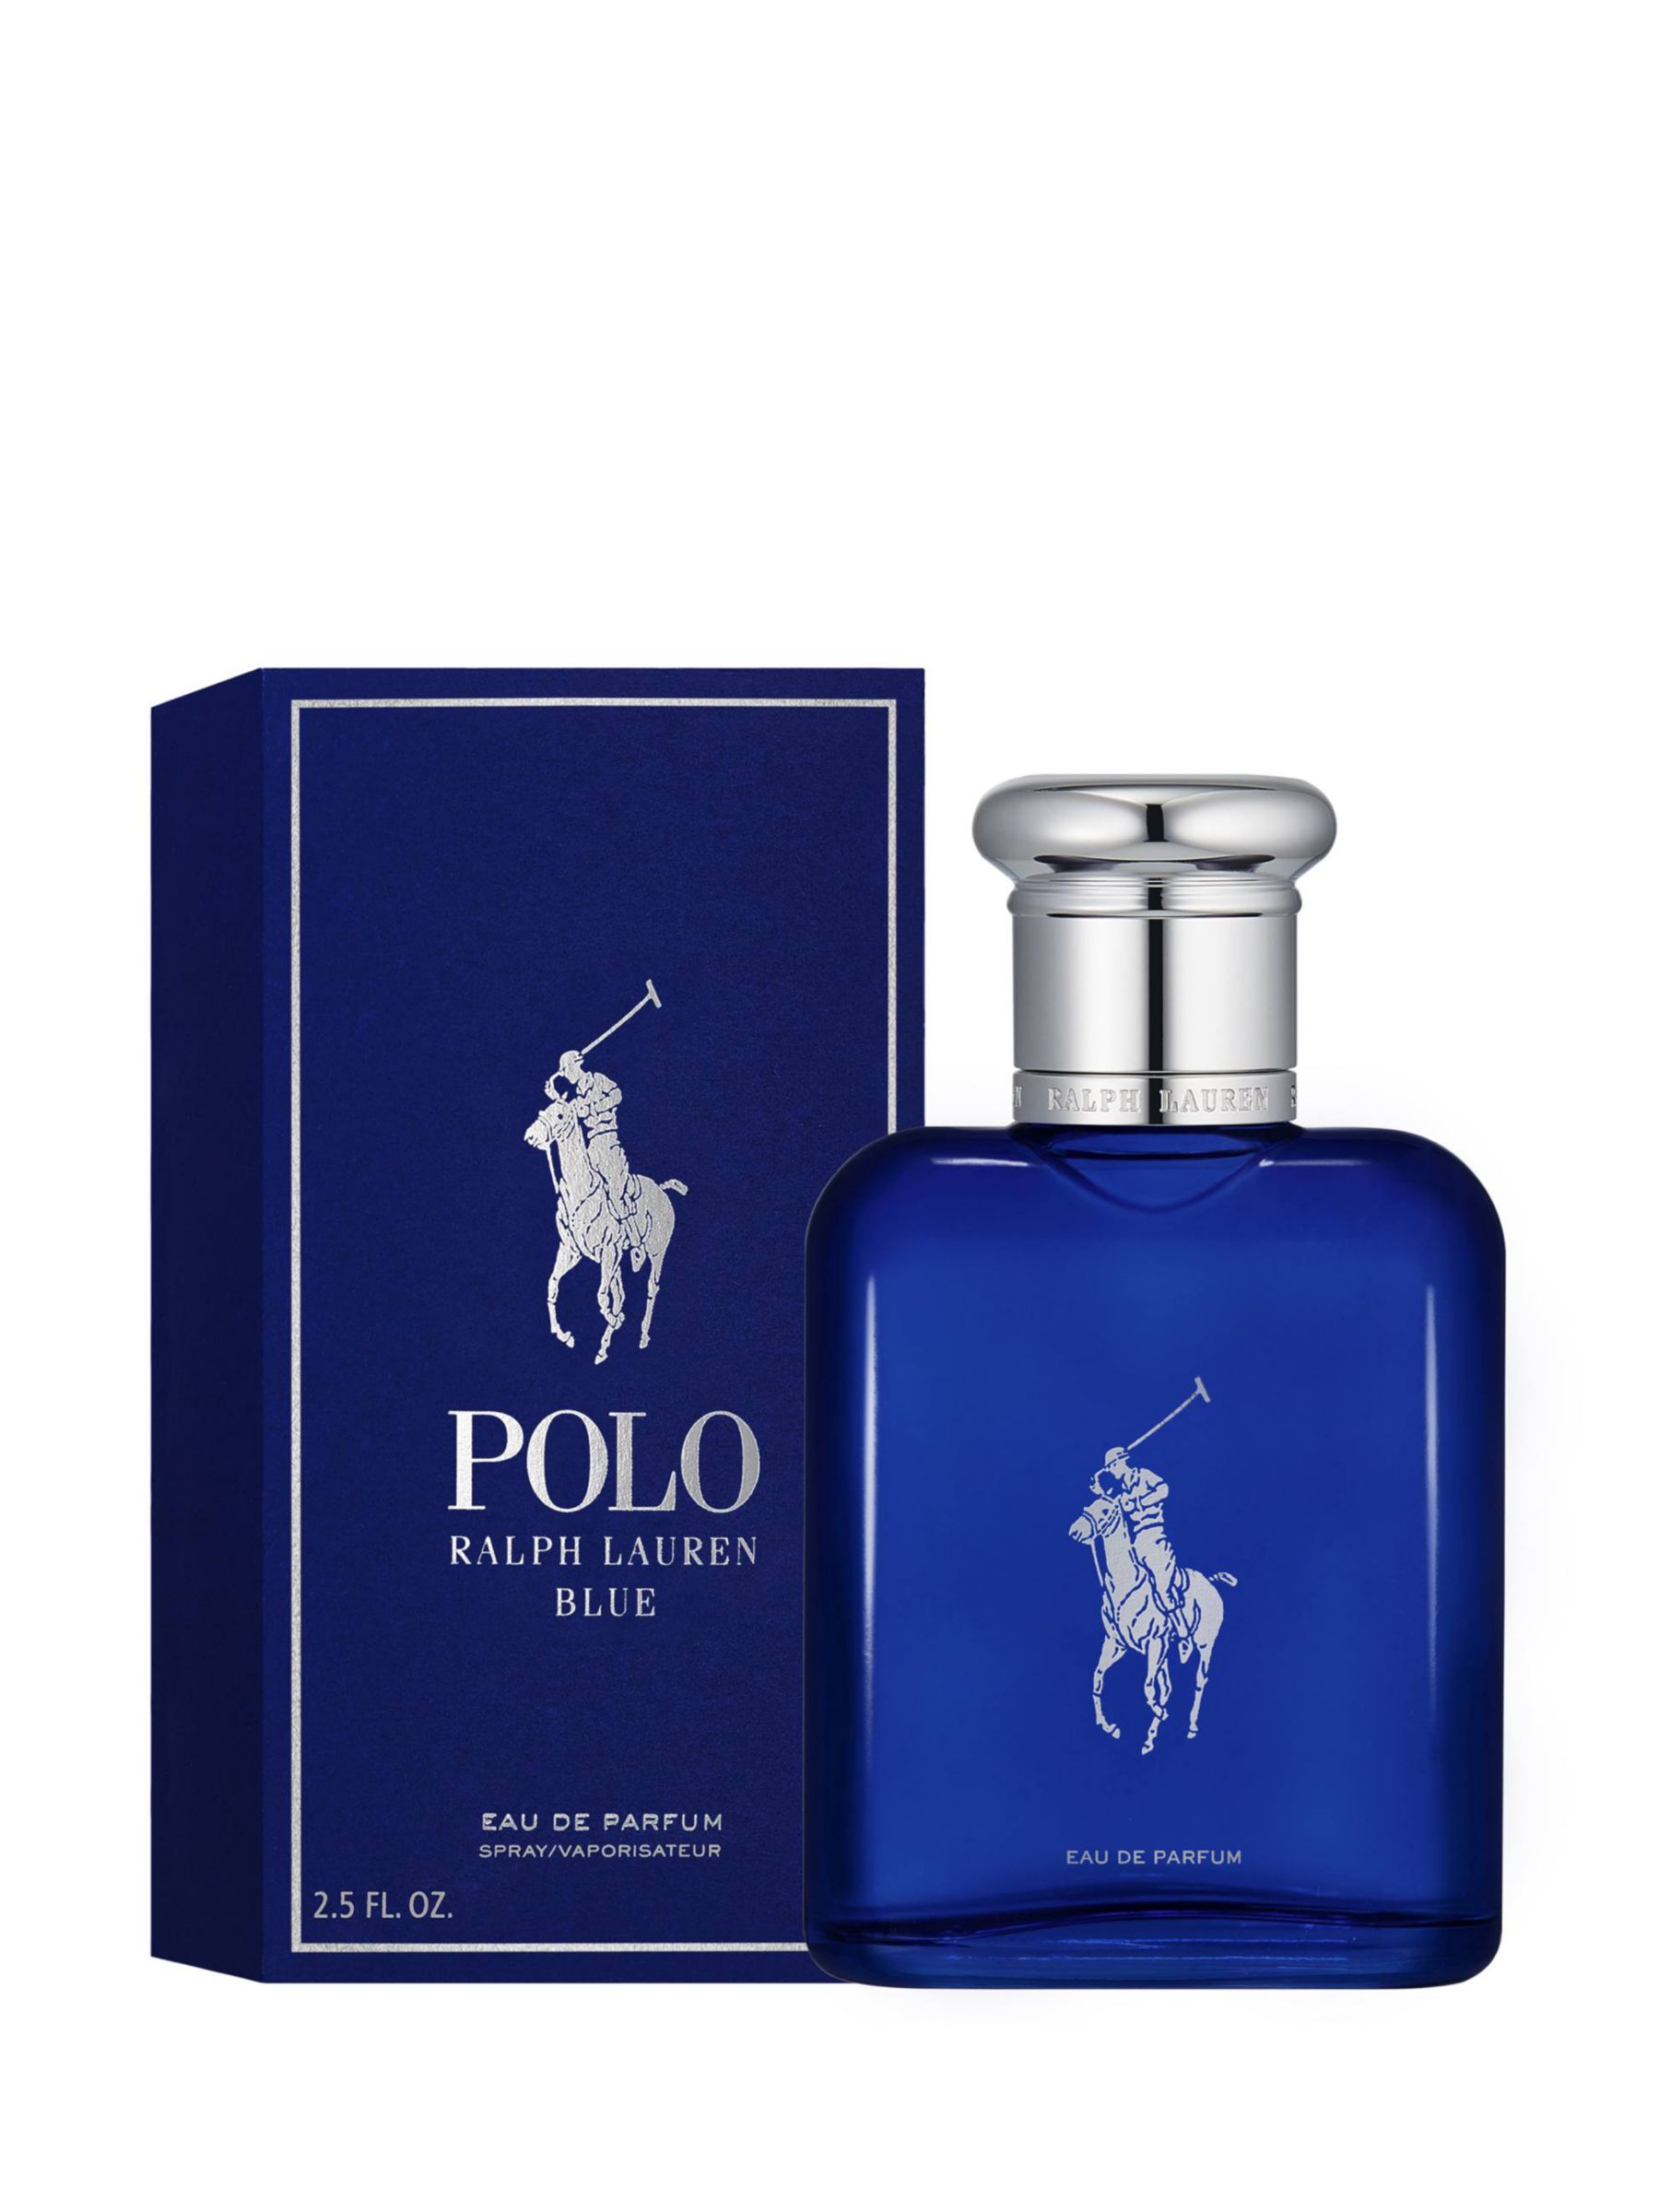 polo blue 75ml price